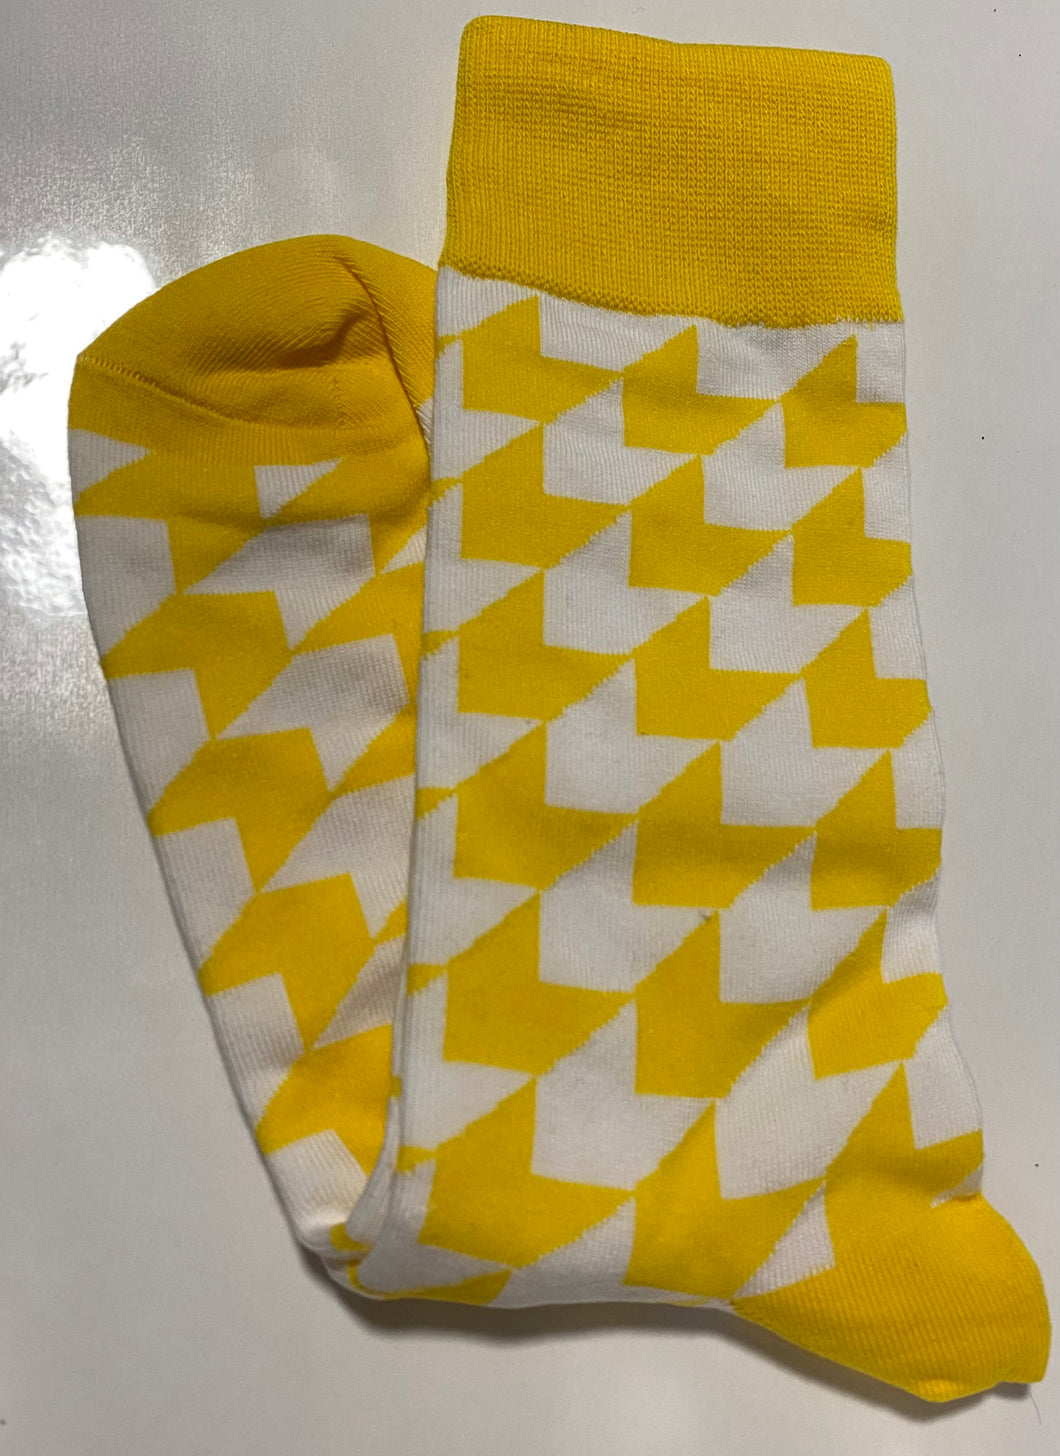 Yellow and White socks